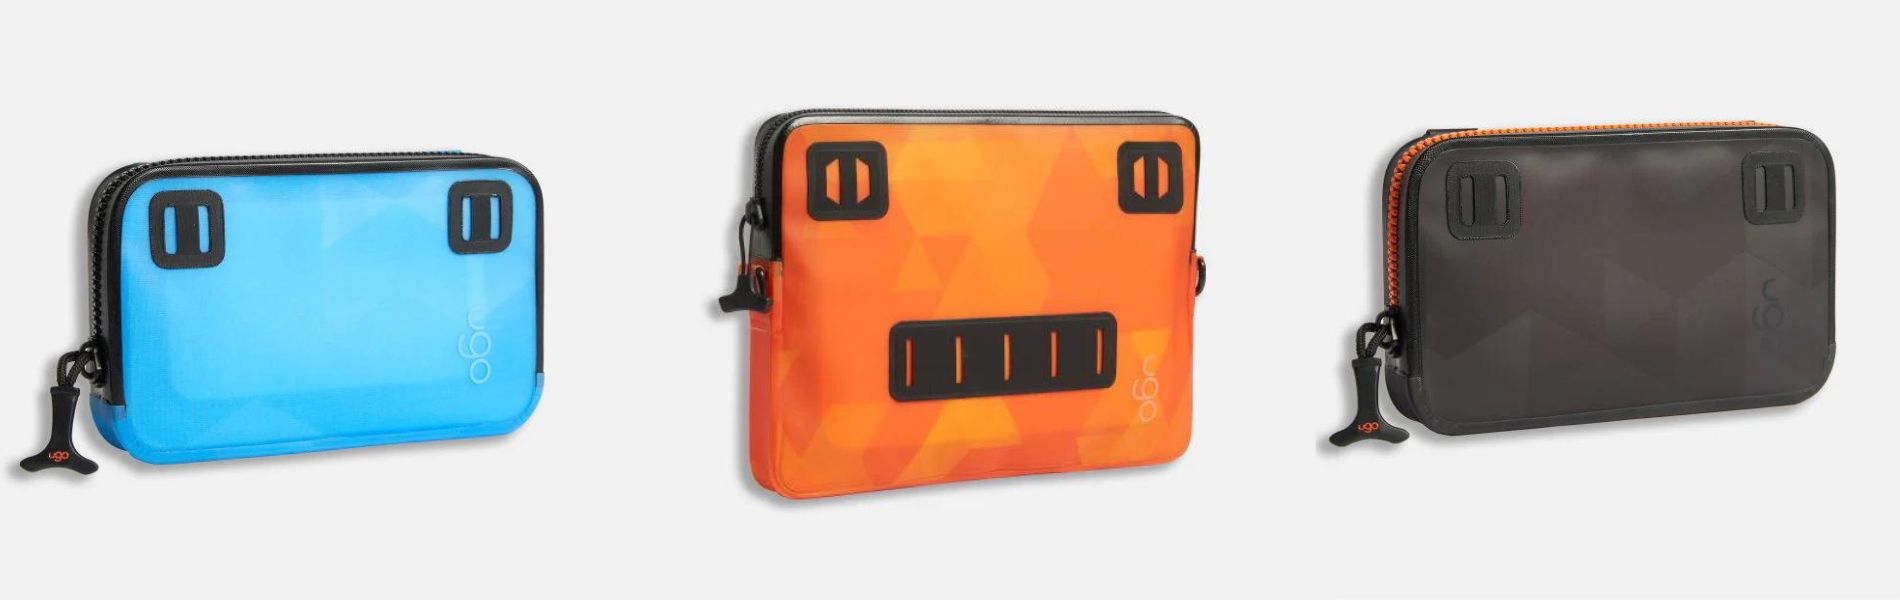 waterproof phone case - ugo - dry bags